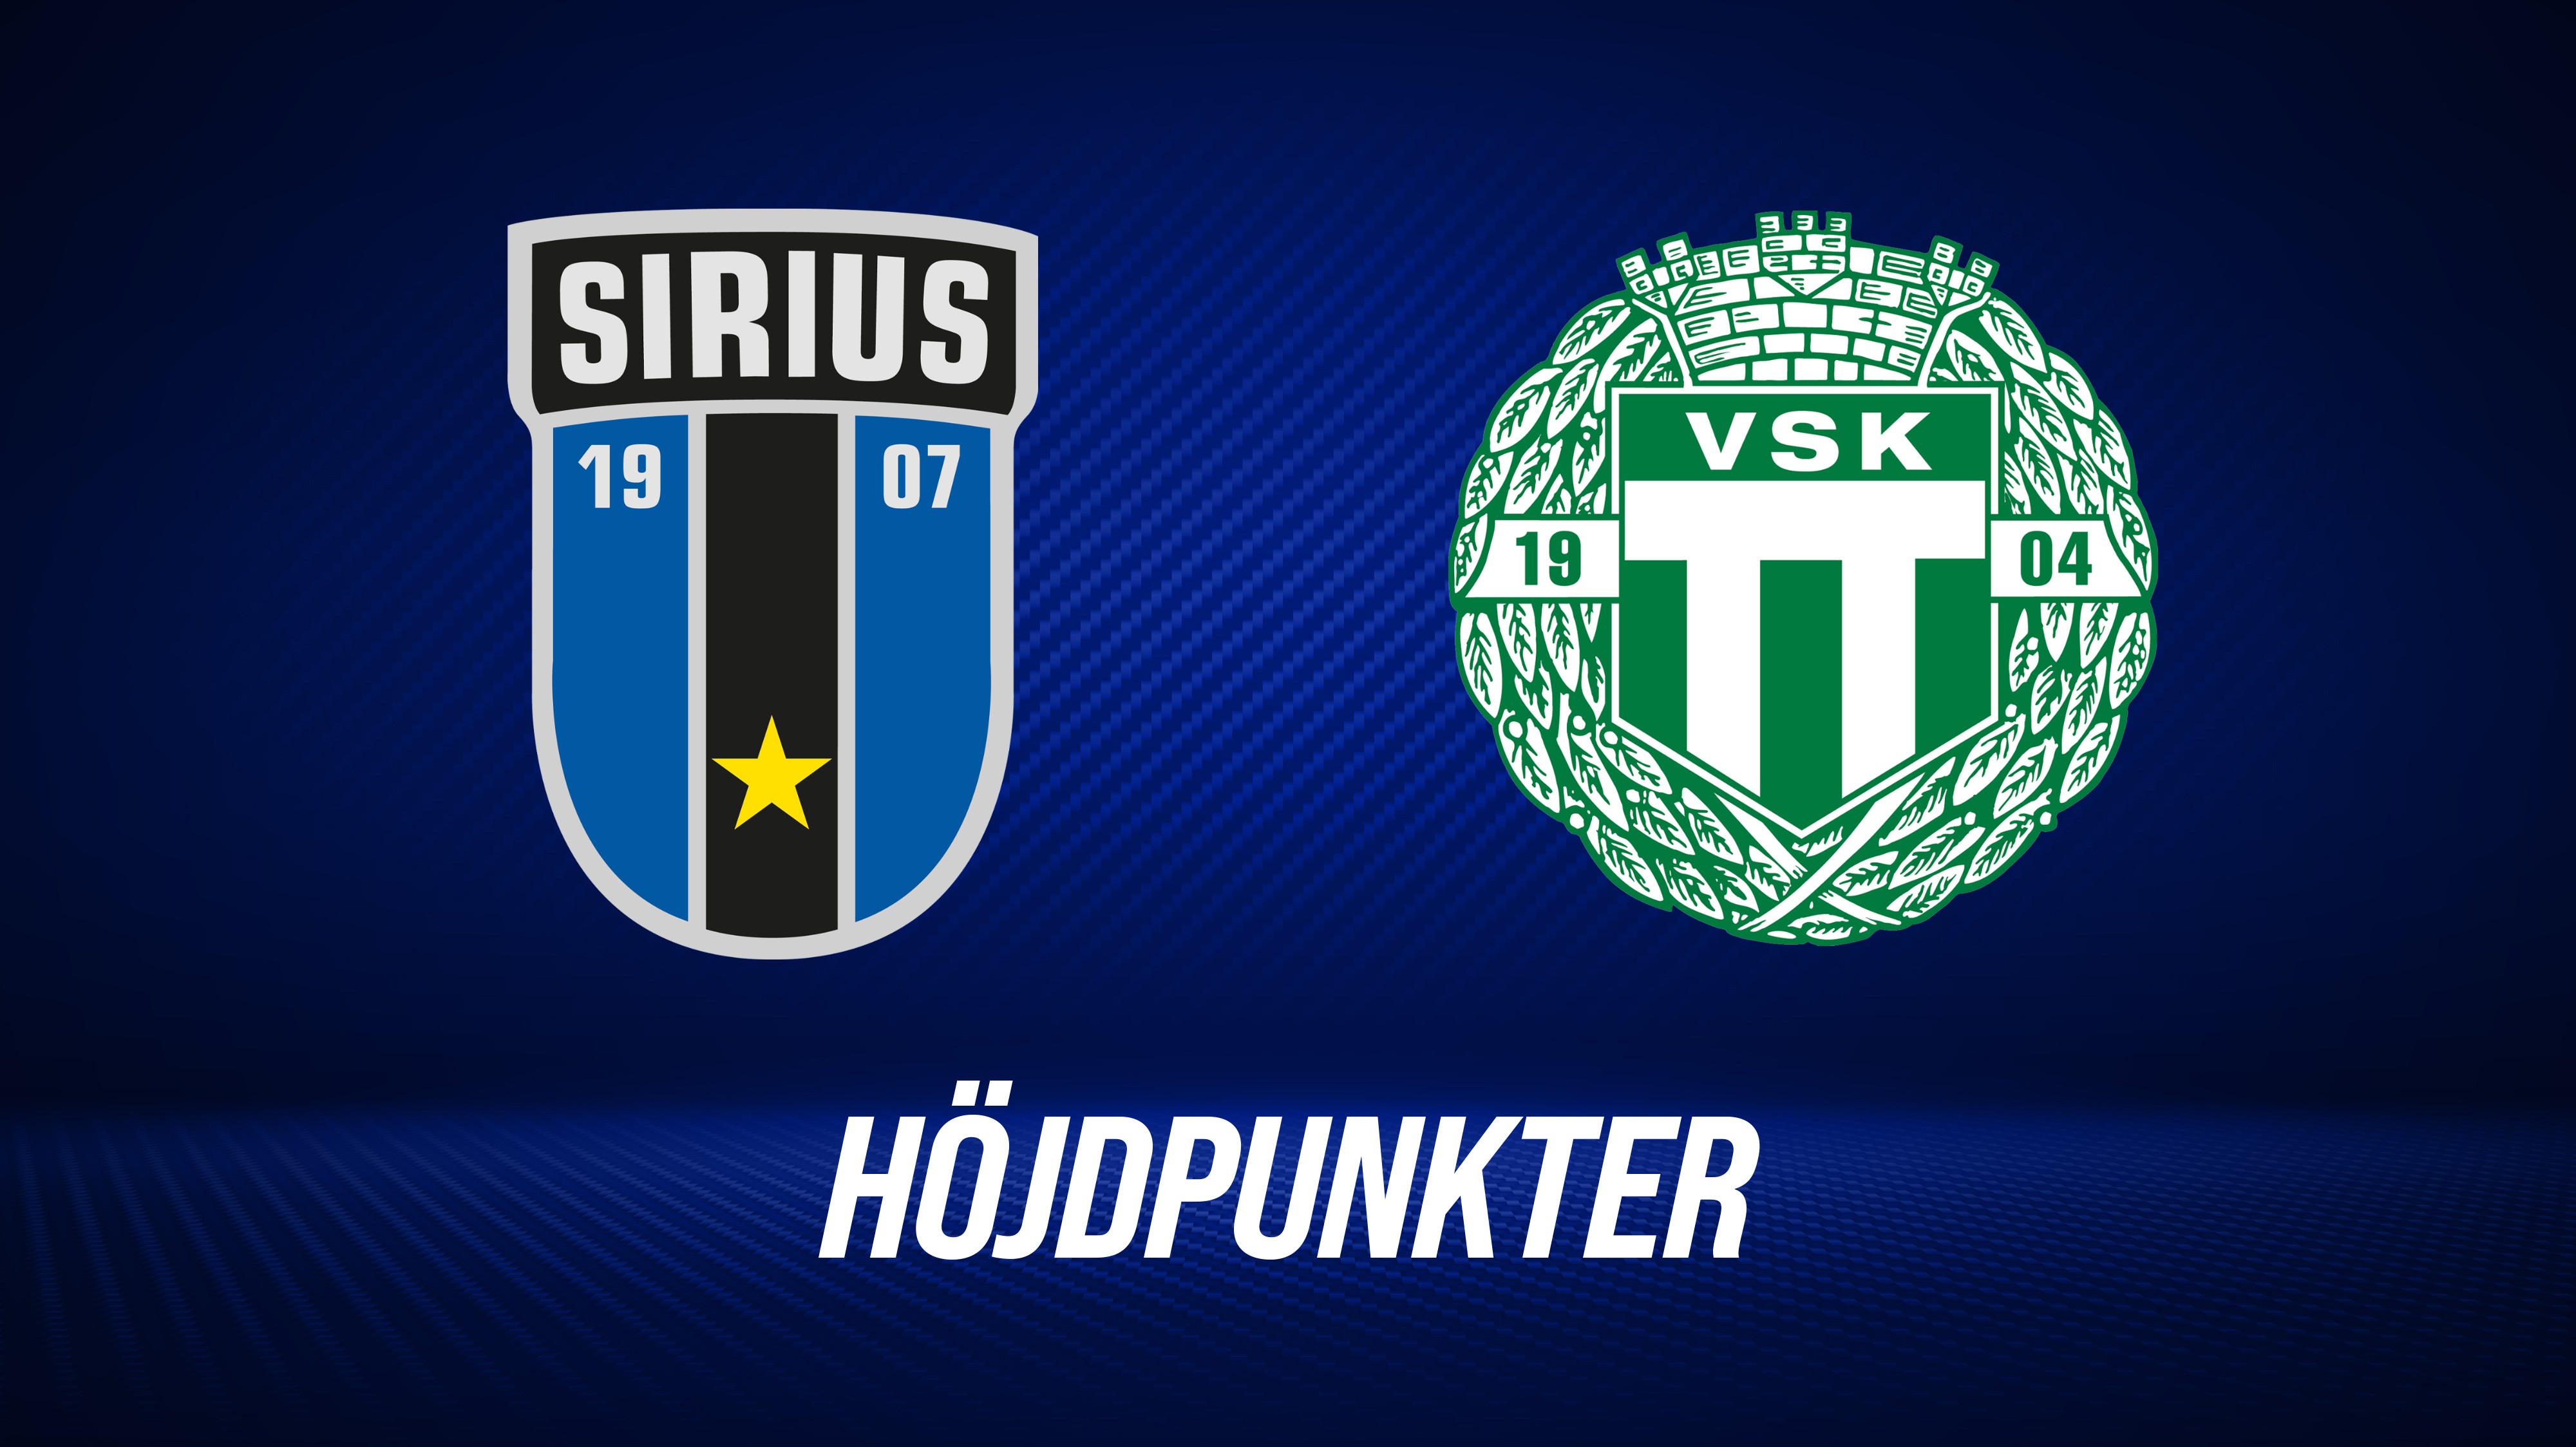 Höjdpunkter: IK Sirius - Västerås SK